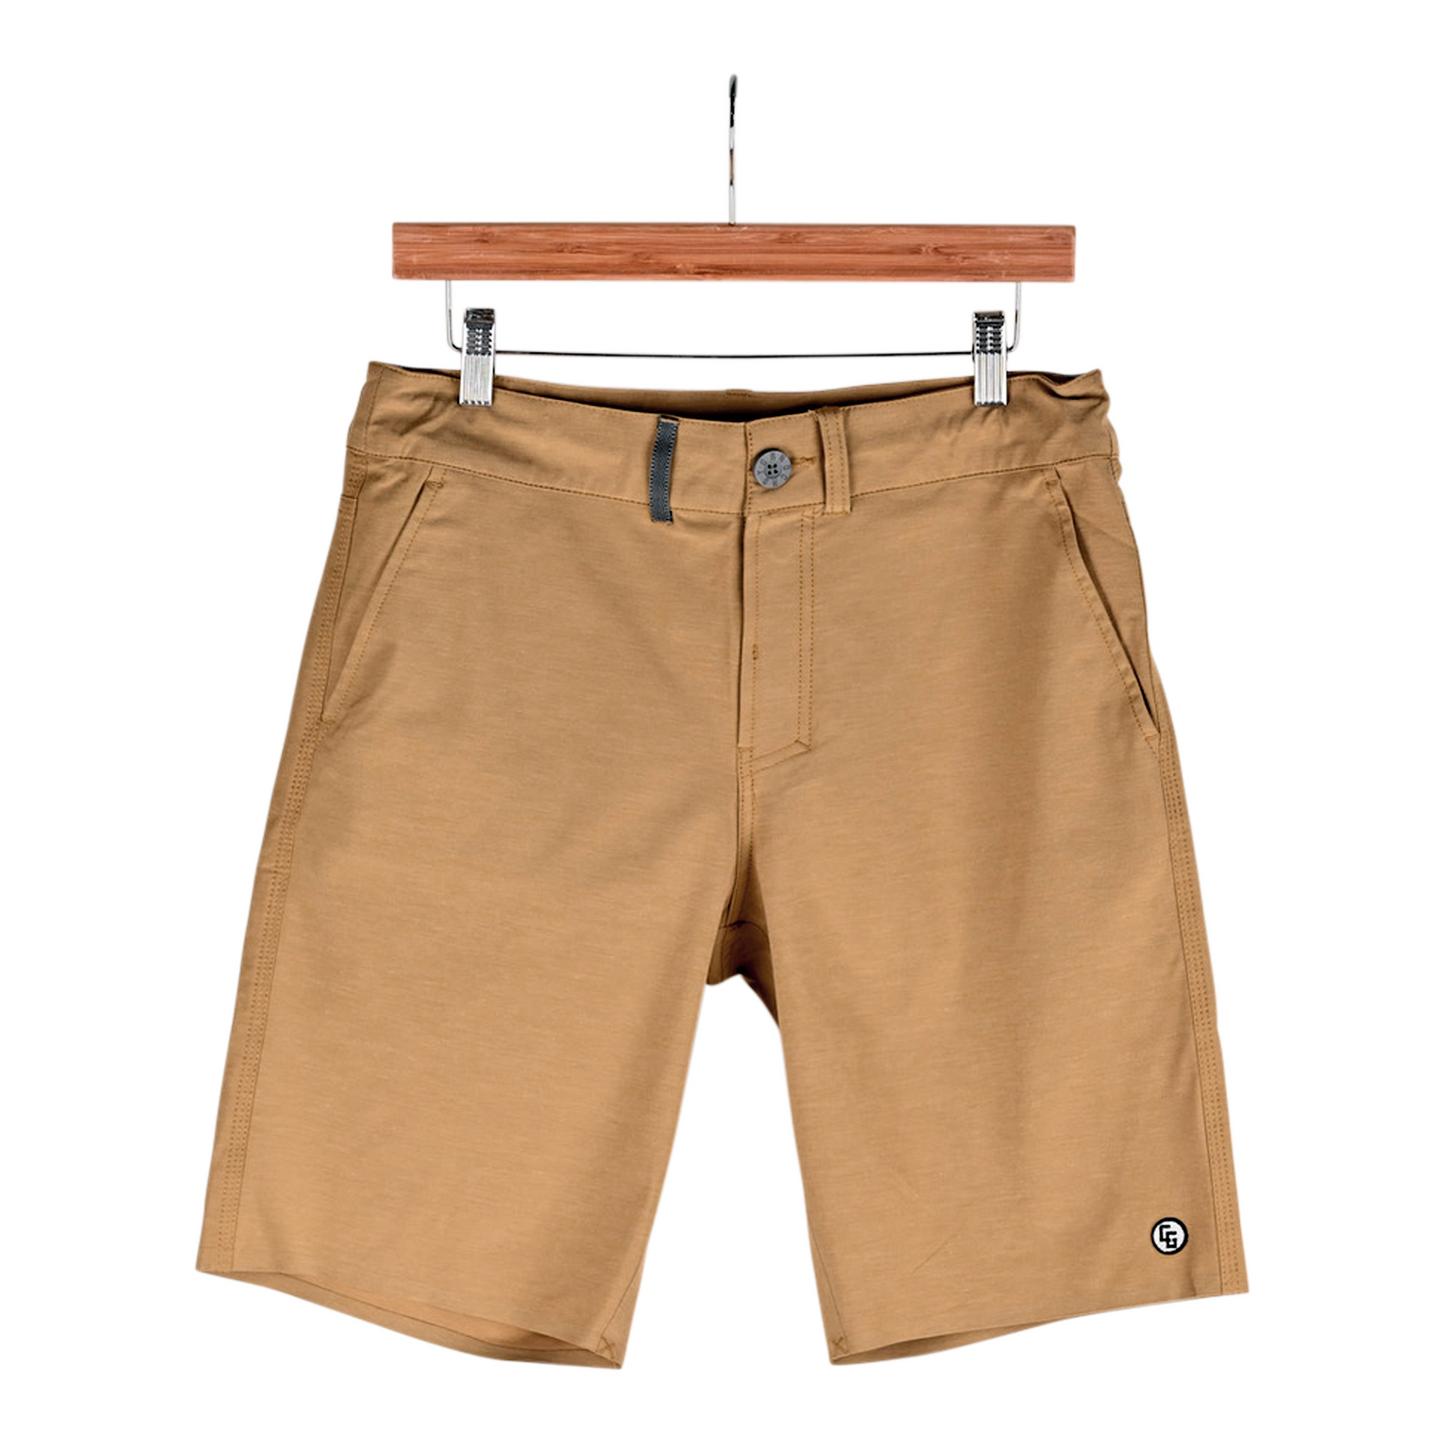 314 Fit / Walker Fit / Board Shorts, Goodies N Stuff